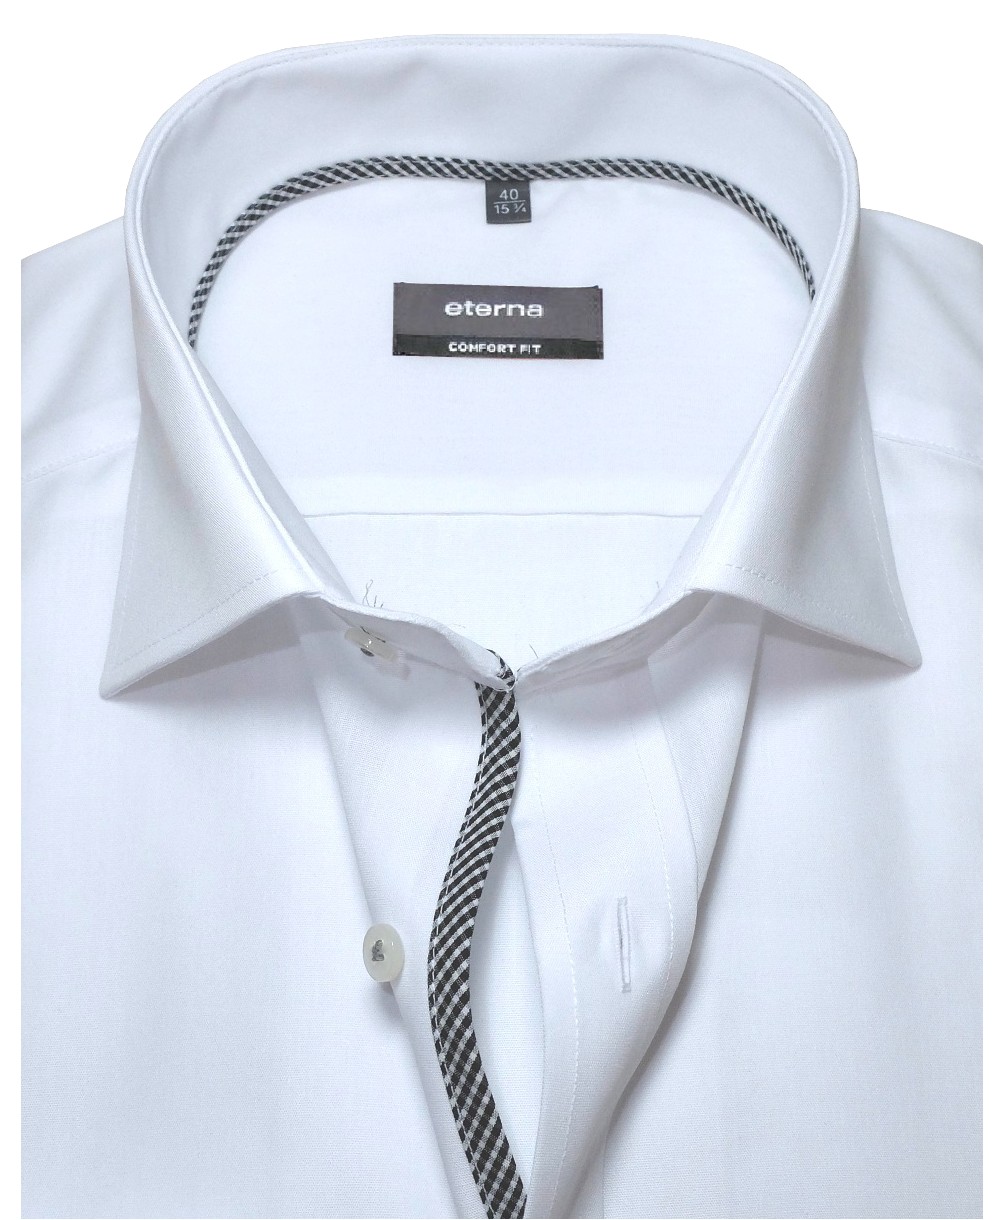 eterna Comfort Fit Langarmhemd in weiss mit modischen Details - Hochwertige  Herrenmode führender Marken zu fairen